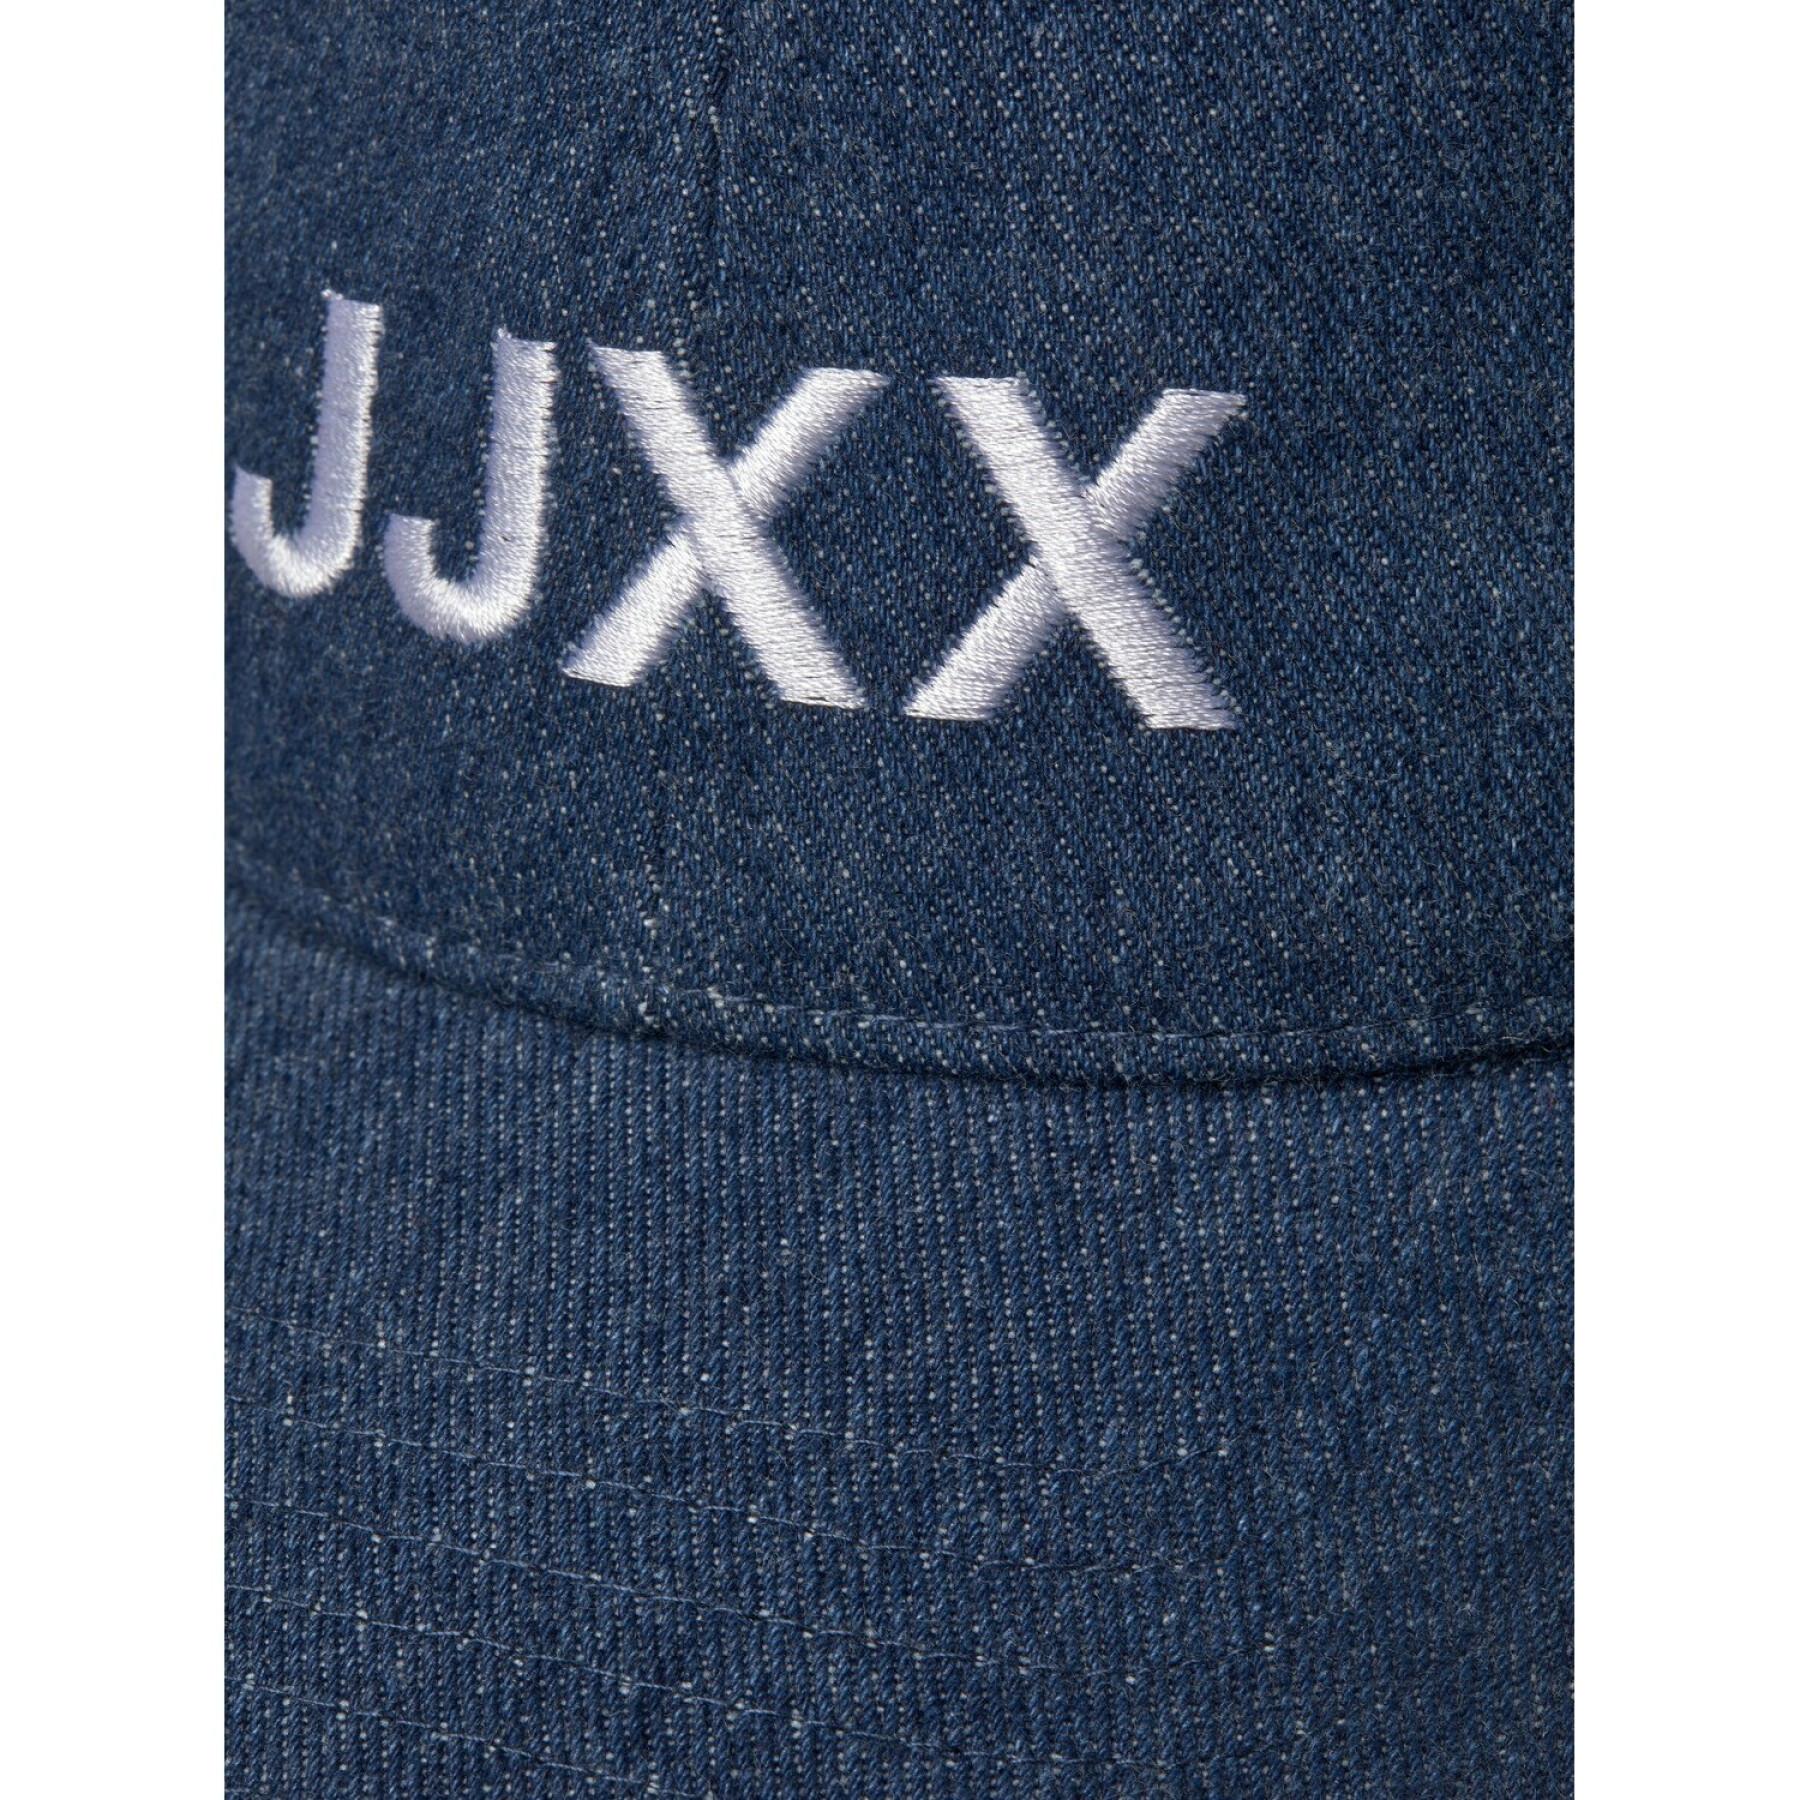 Boné feminino JJXX basic big logo denim